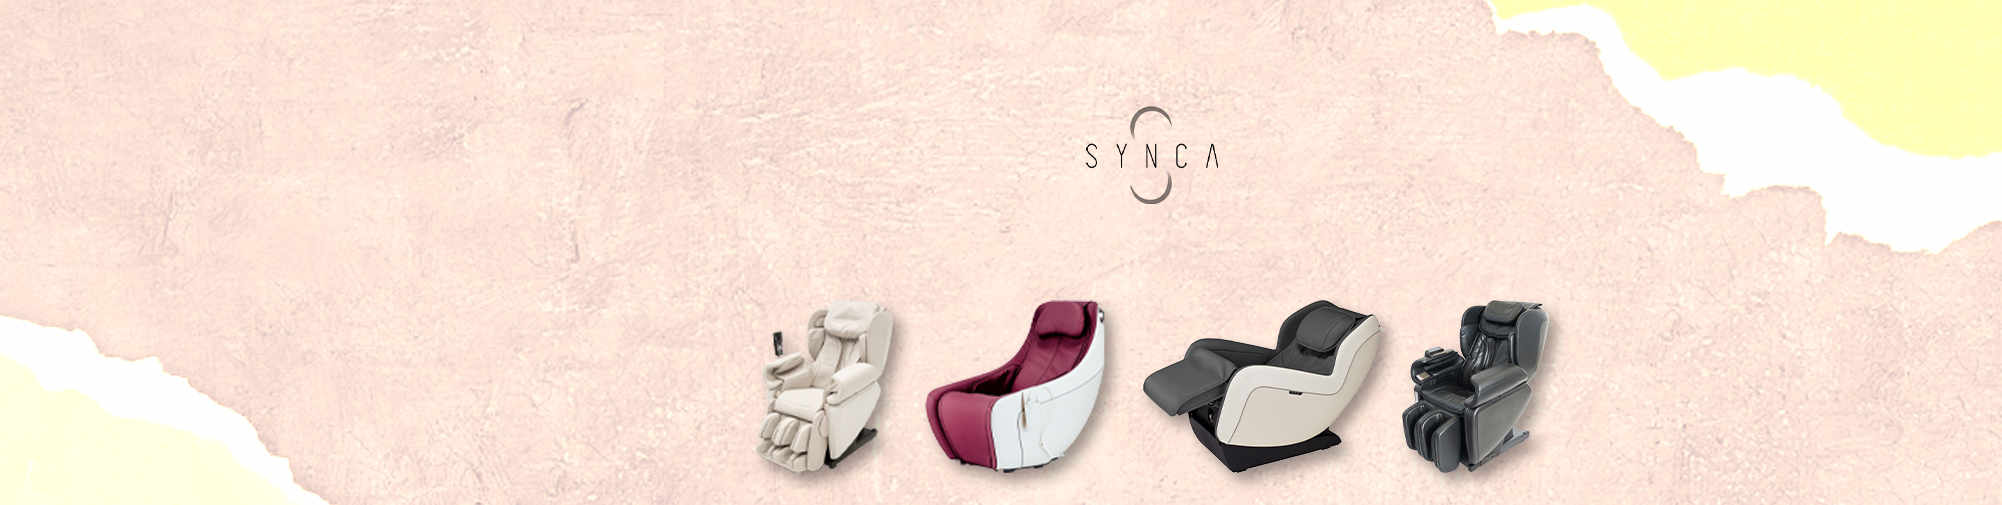 SYNCA - отмеченный наградами производитель велнеса | Massage Chair World